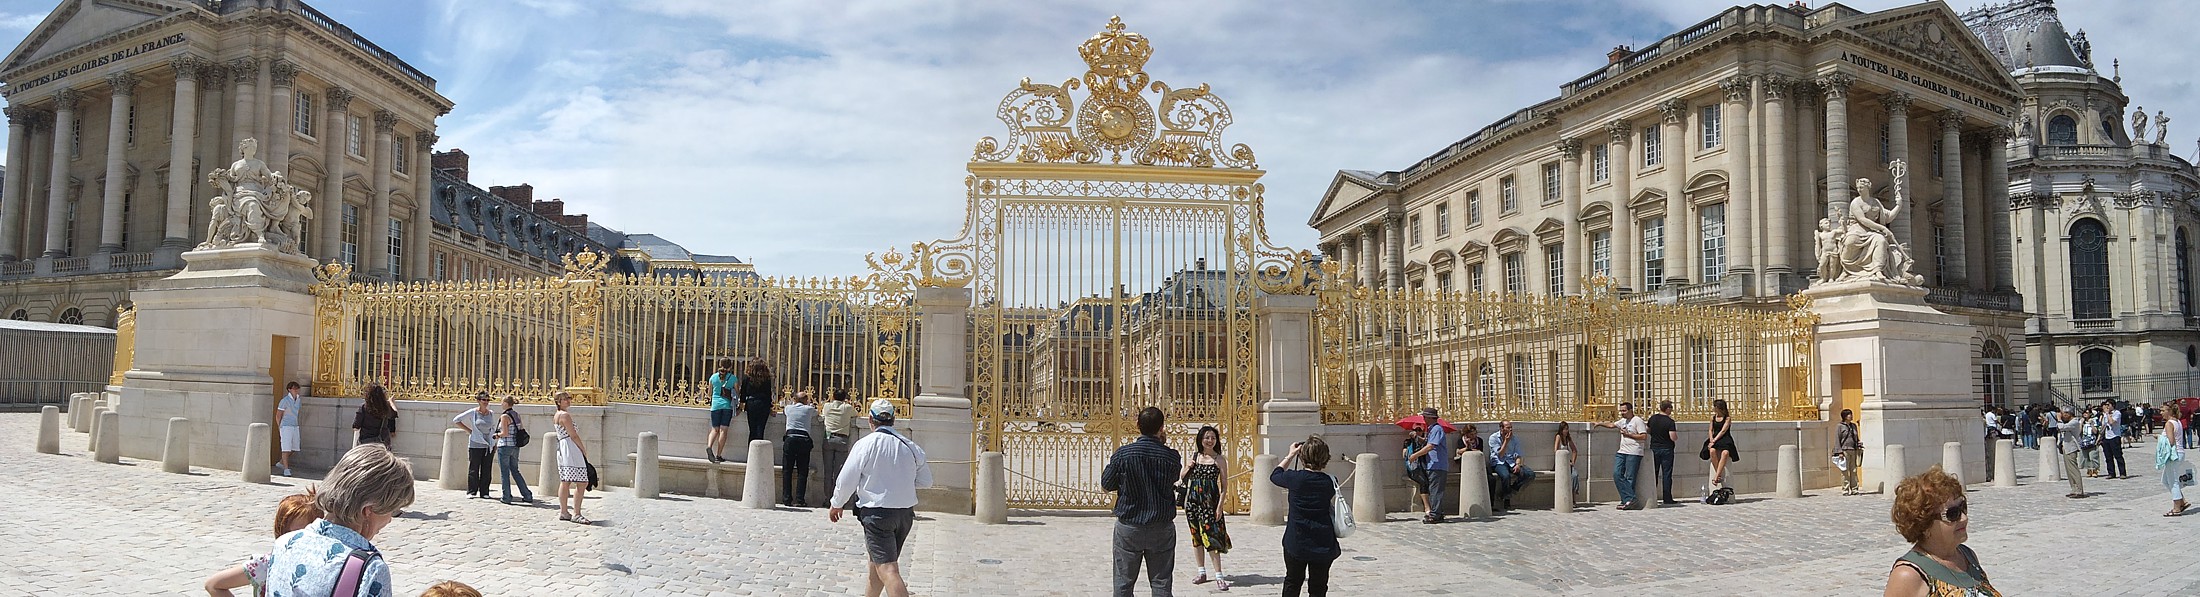 Panorama na bramy Wersalu
Versailles
[i]Photo by G.W.[/i]
Słowa kluczowe: Paryż,panorama,budynek